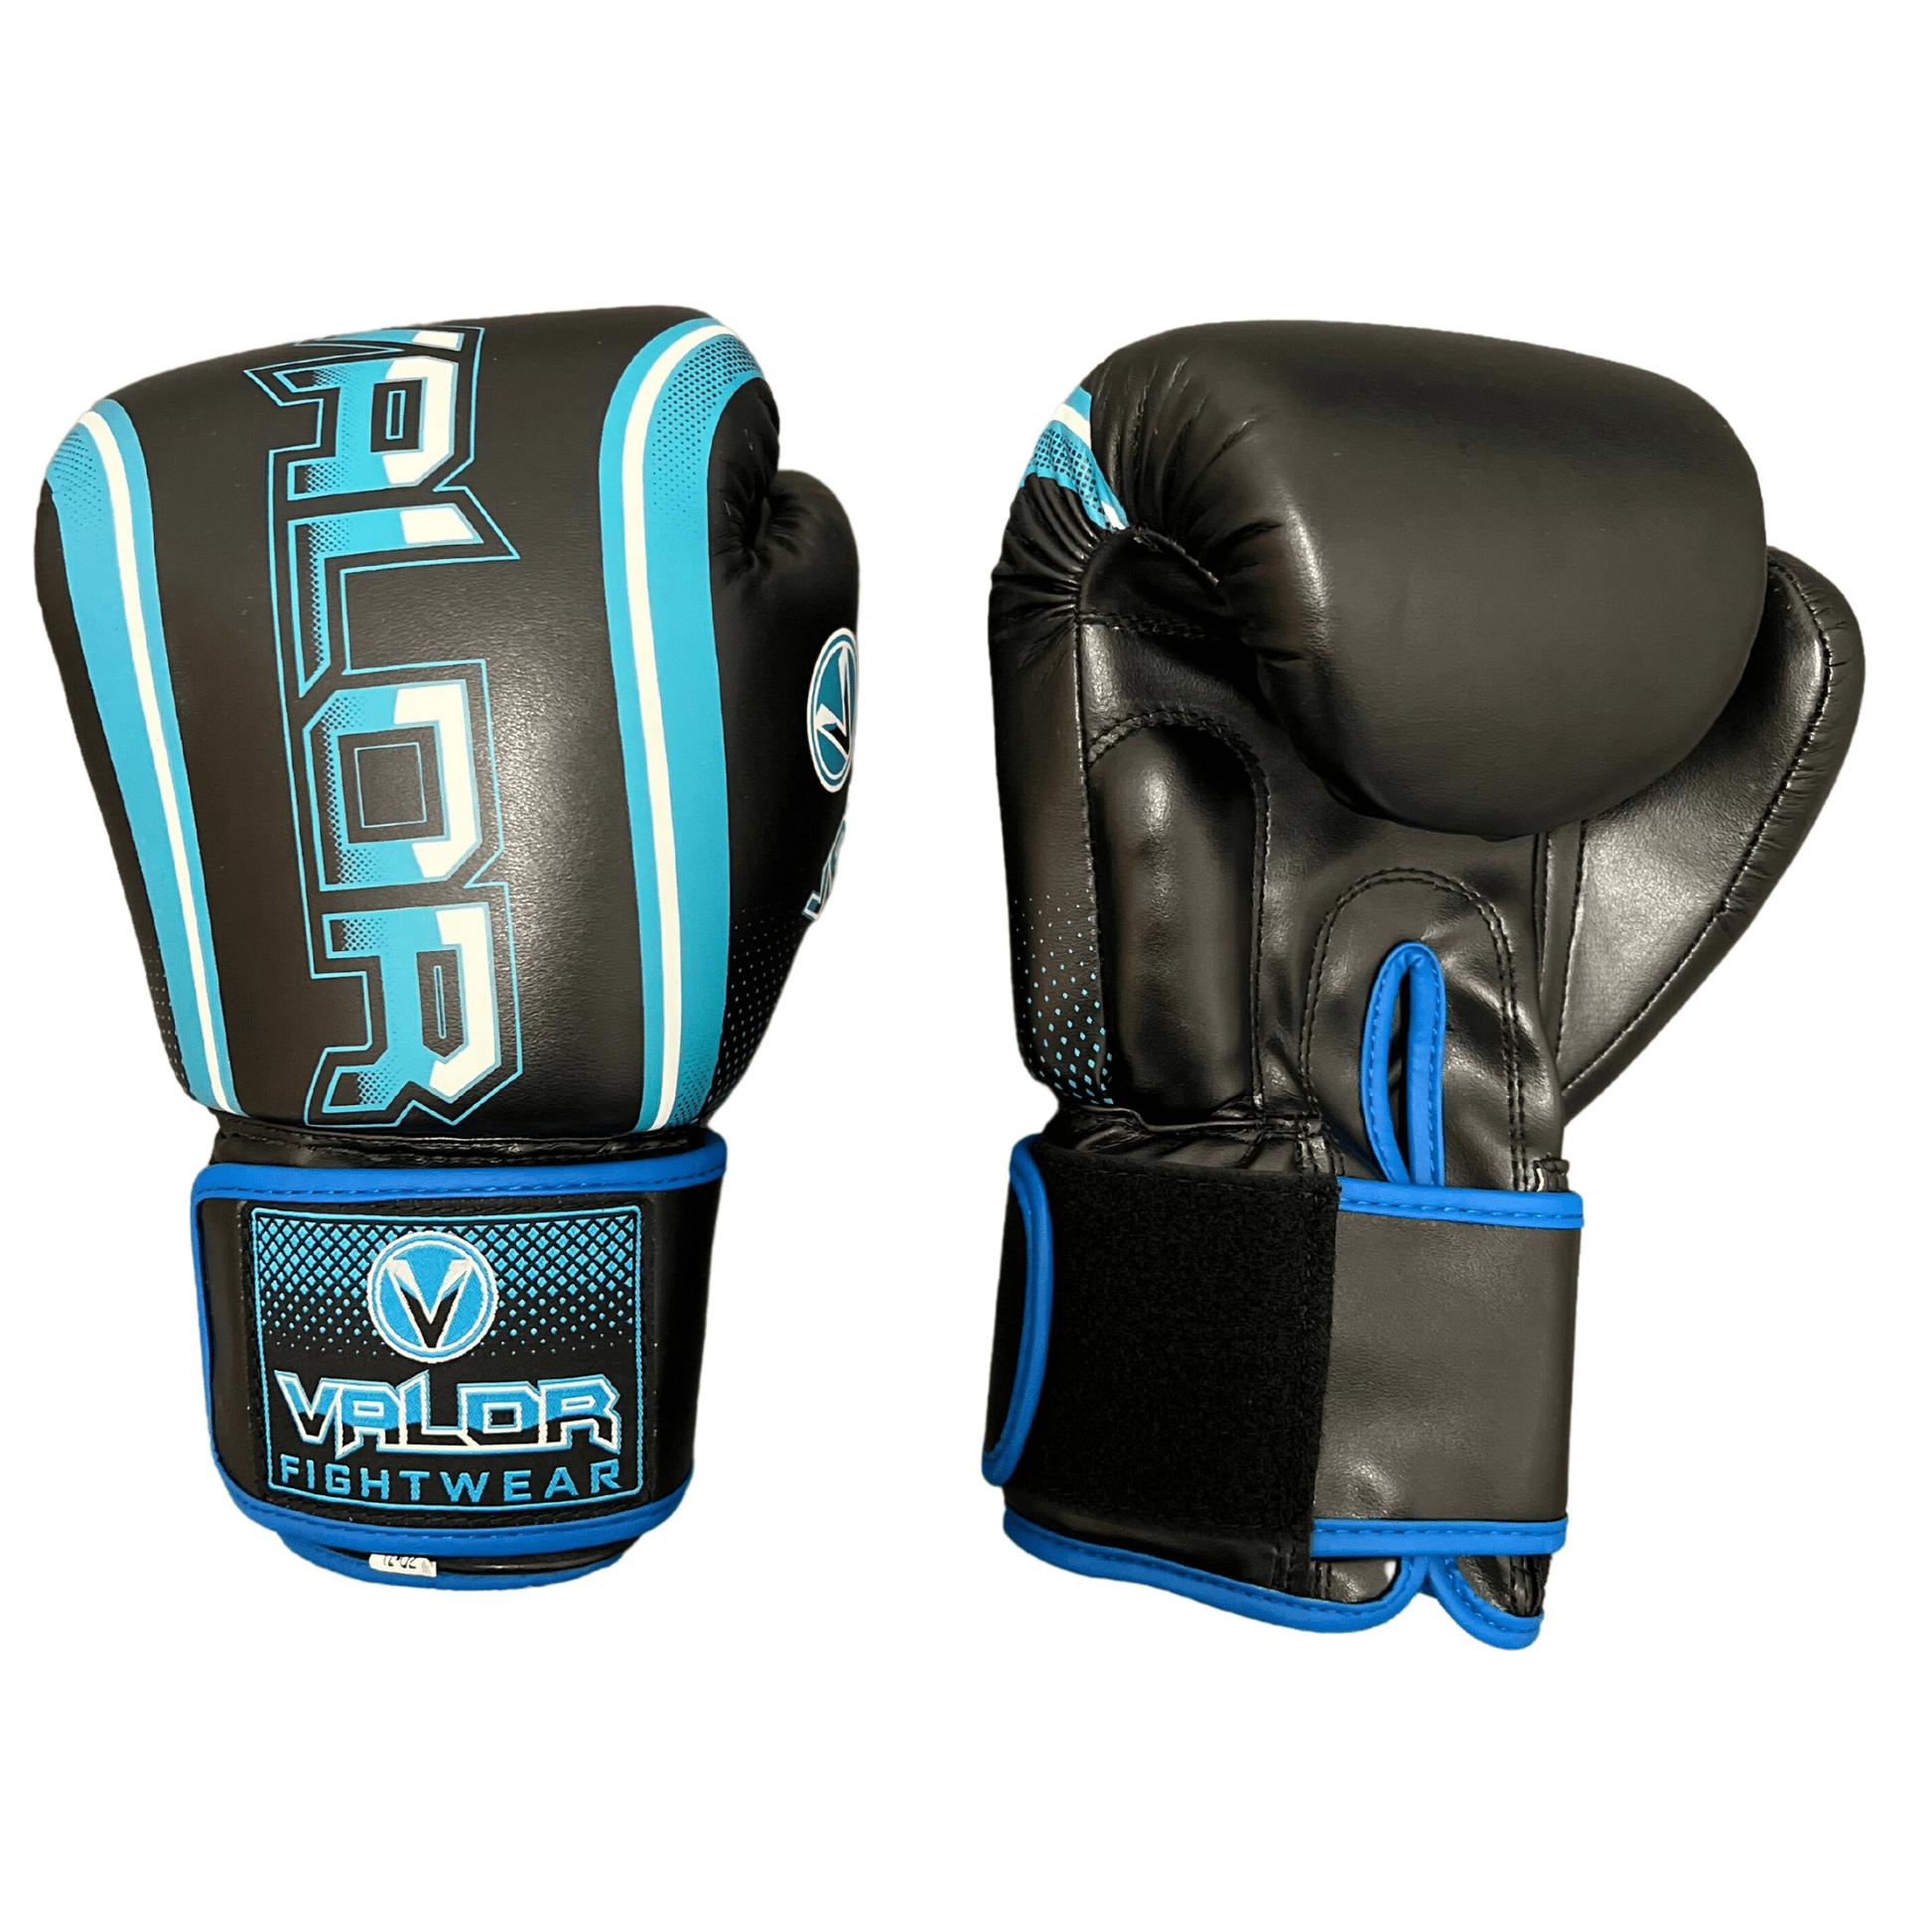 Fade 12oz Boxing Gloves - Black/Blue - Valor Fightwear Boxing Gloves Valor Fightwear   